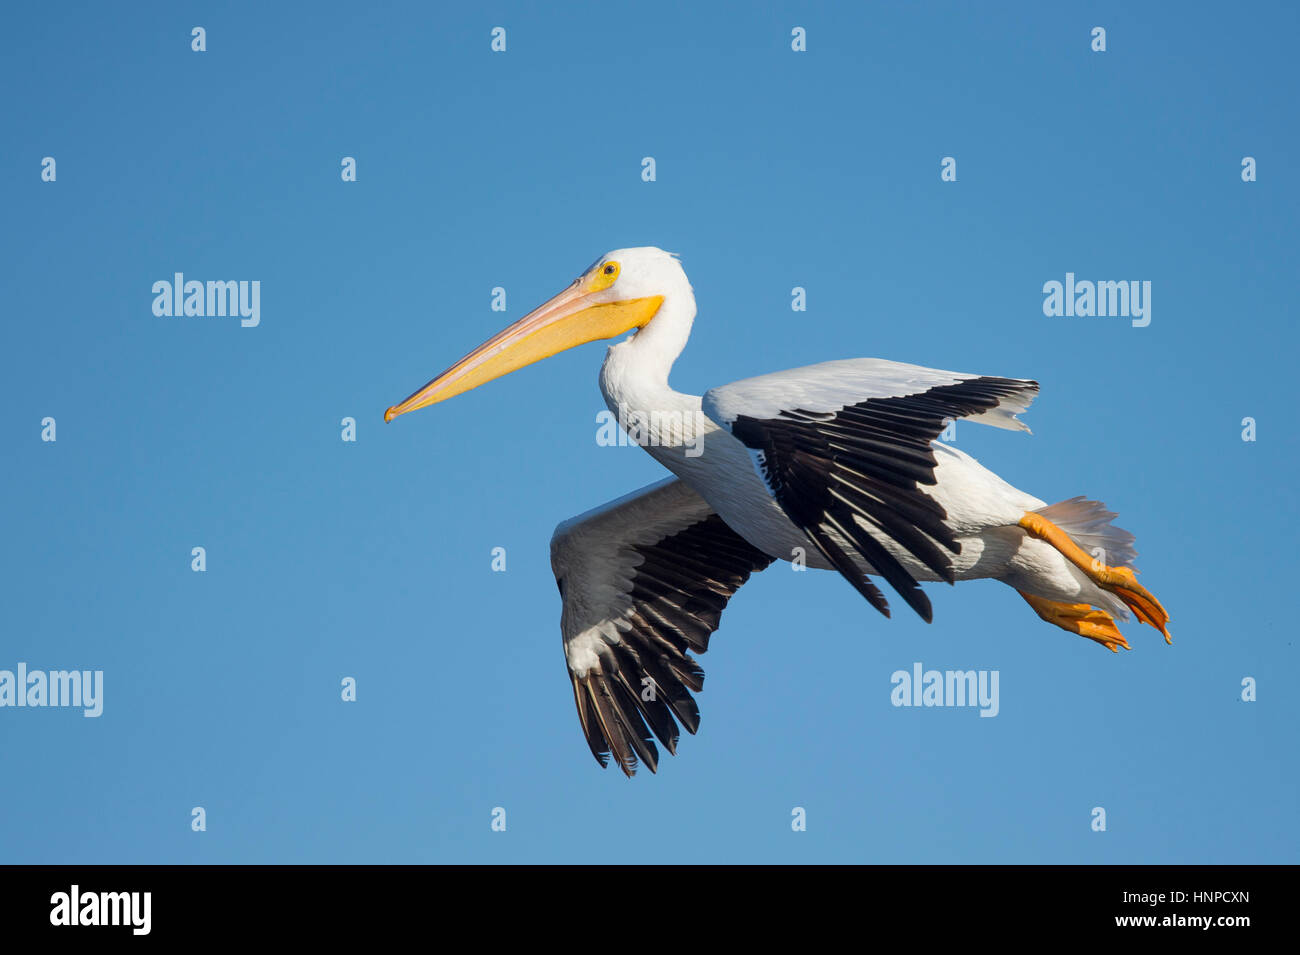 Un pélican blanc glisse dans pour un atterrissage avec ses pieds en arrière et ses ailes déployées contre un ciel bleu. Banque D'Images